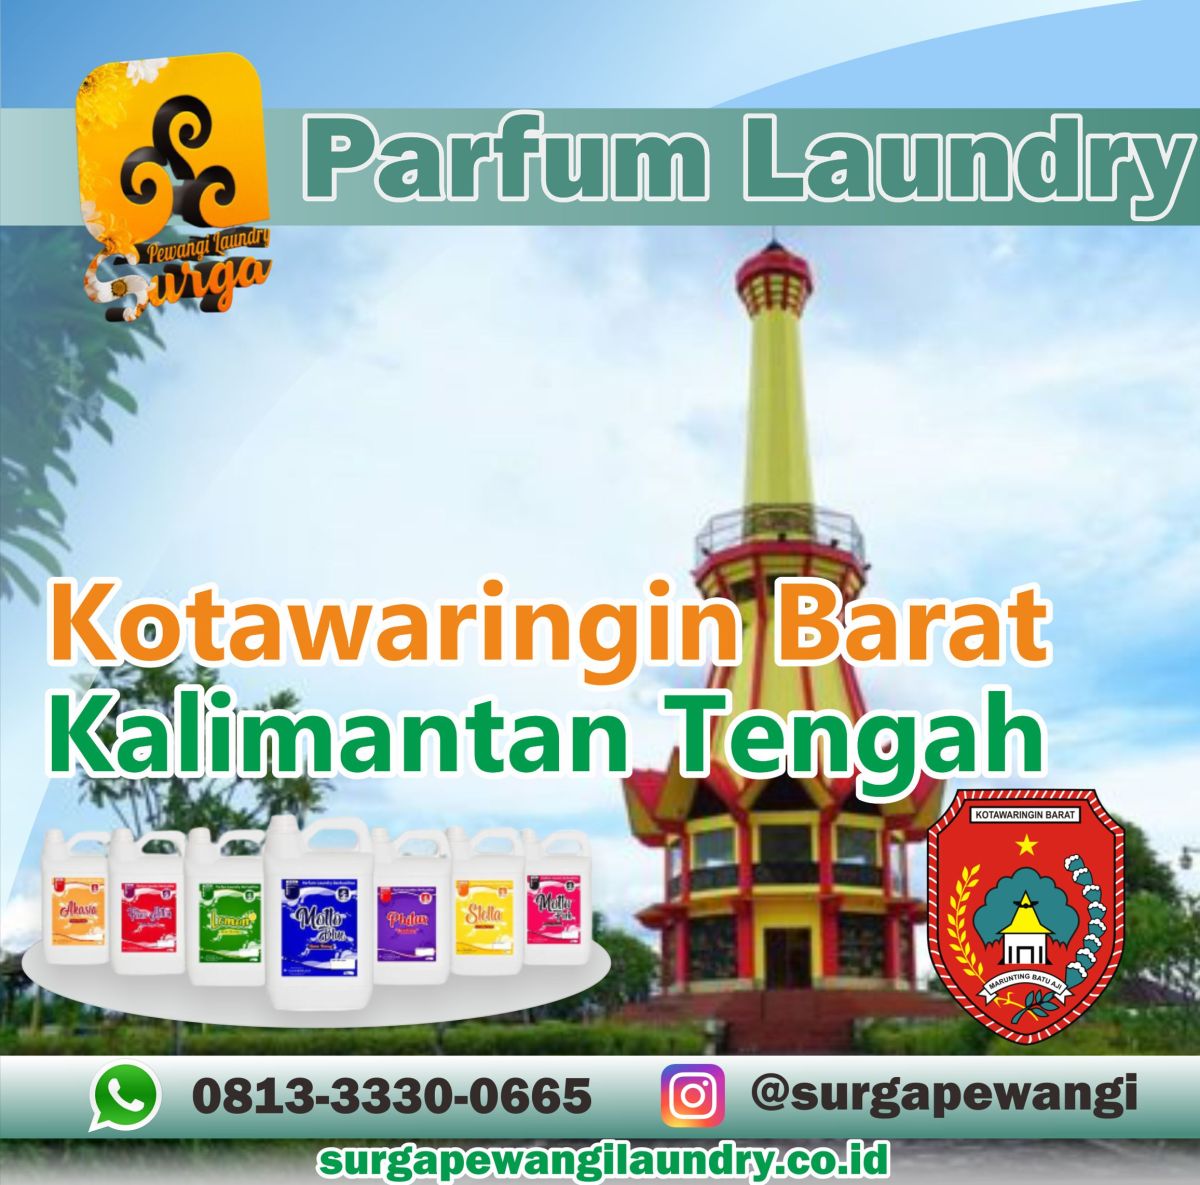 Parfum Laundry Kabupaten Kotawaringin Barat, Kalimantan Tengah